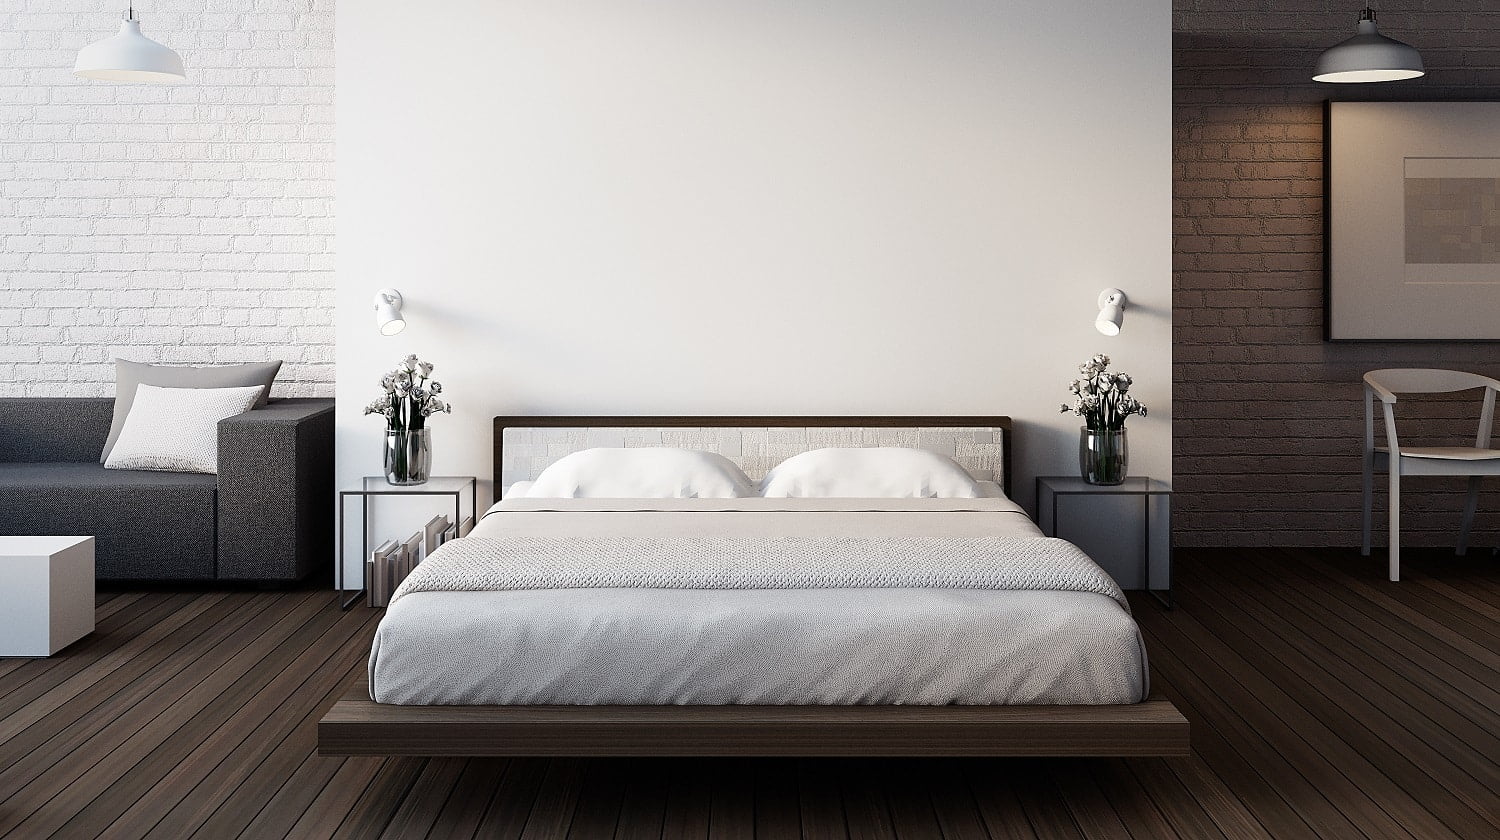 10 Best Full Size Bed Frame 2